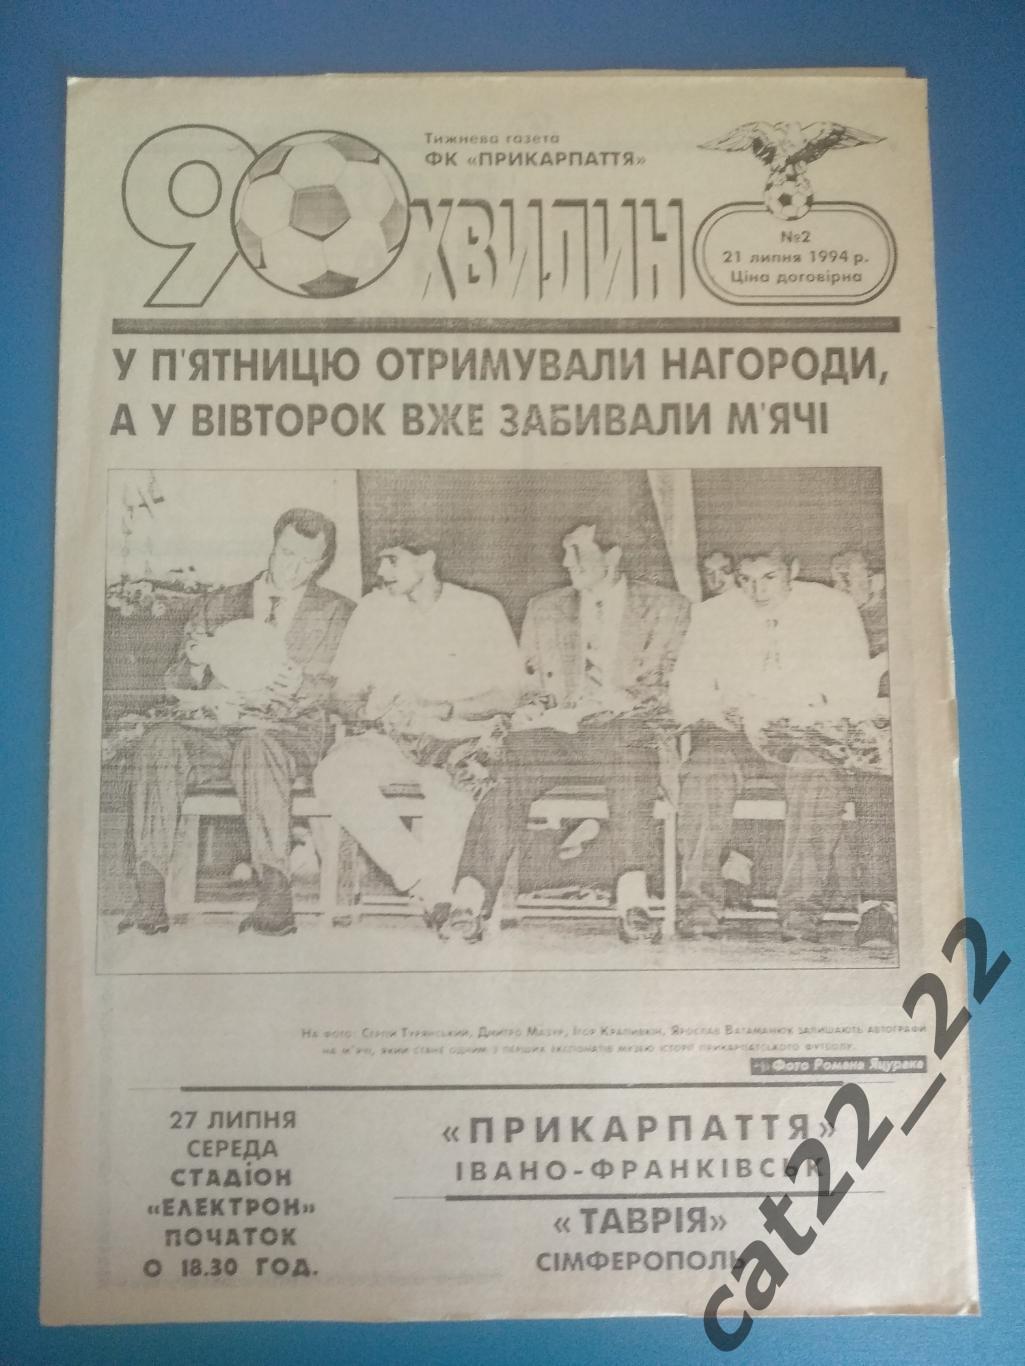 Прикарпатье Ивано - Франковск - Таврия Симферополь 1994/1995